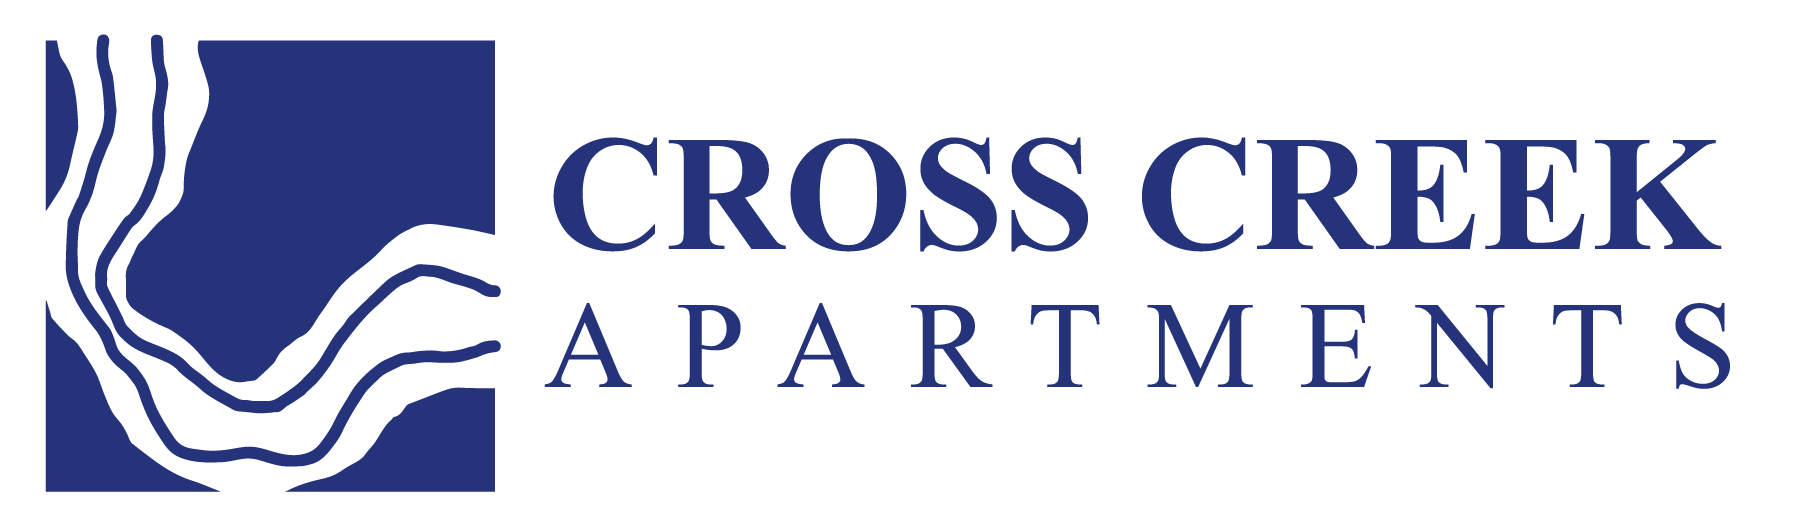 Cross Creek Logo